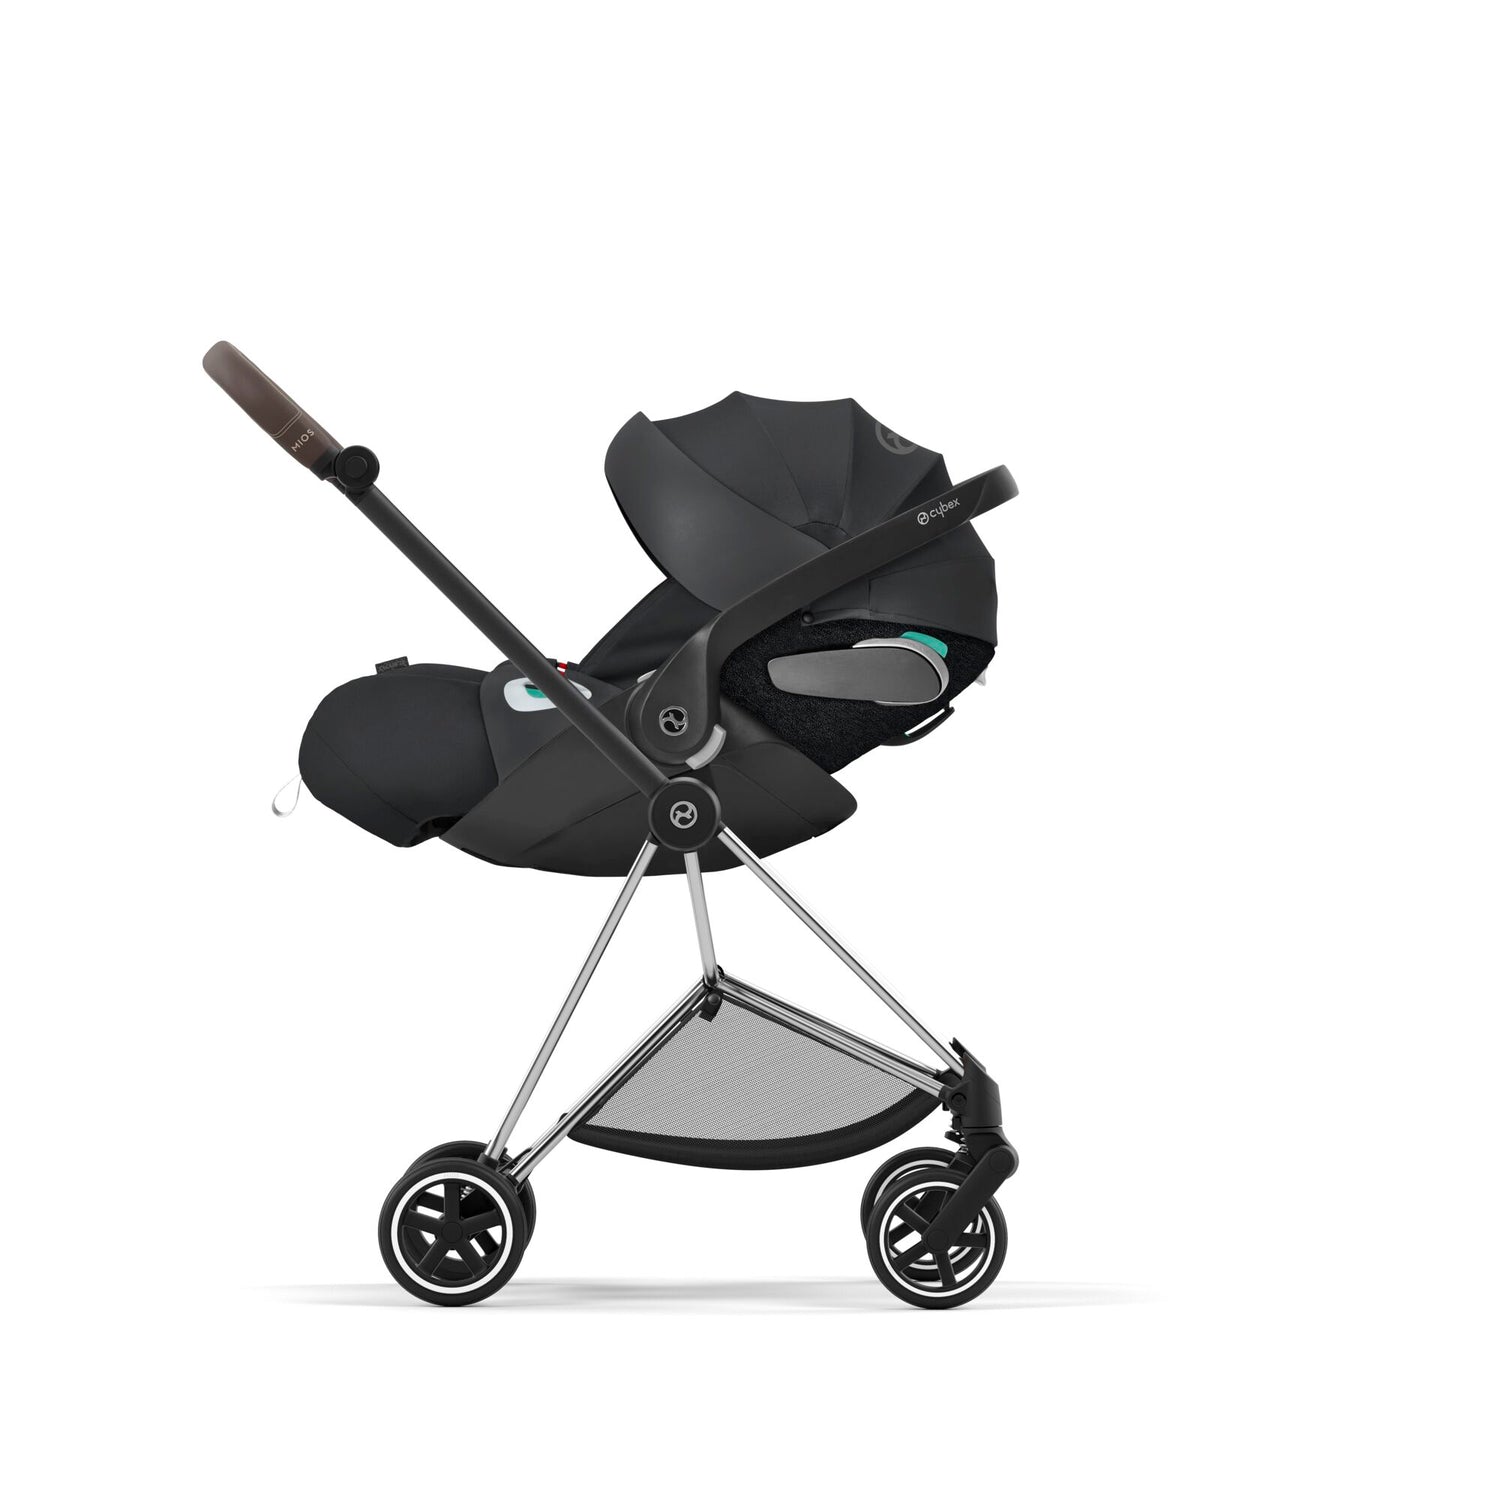 Kinderwagen Mios CYBEX Chrome Brown mit Babyschale Cloud T i-Size Sepia Black